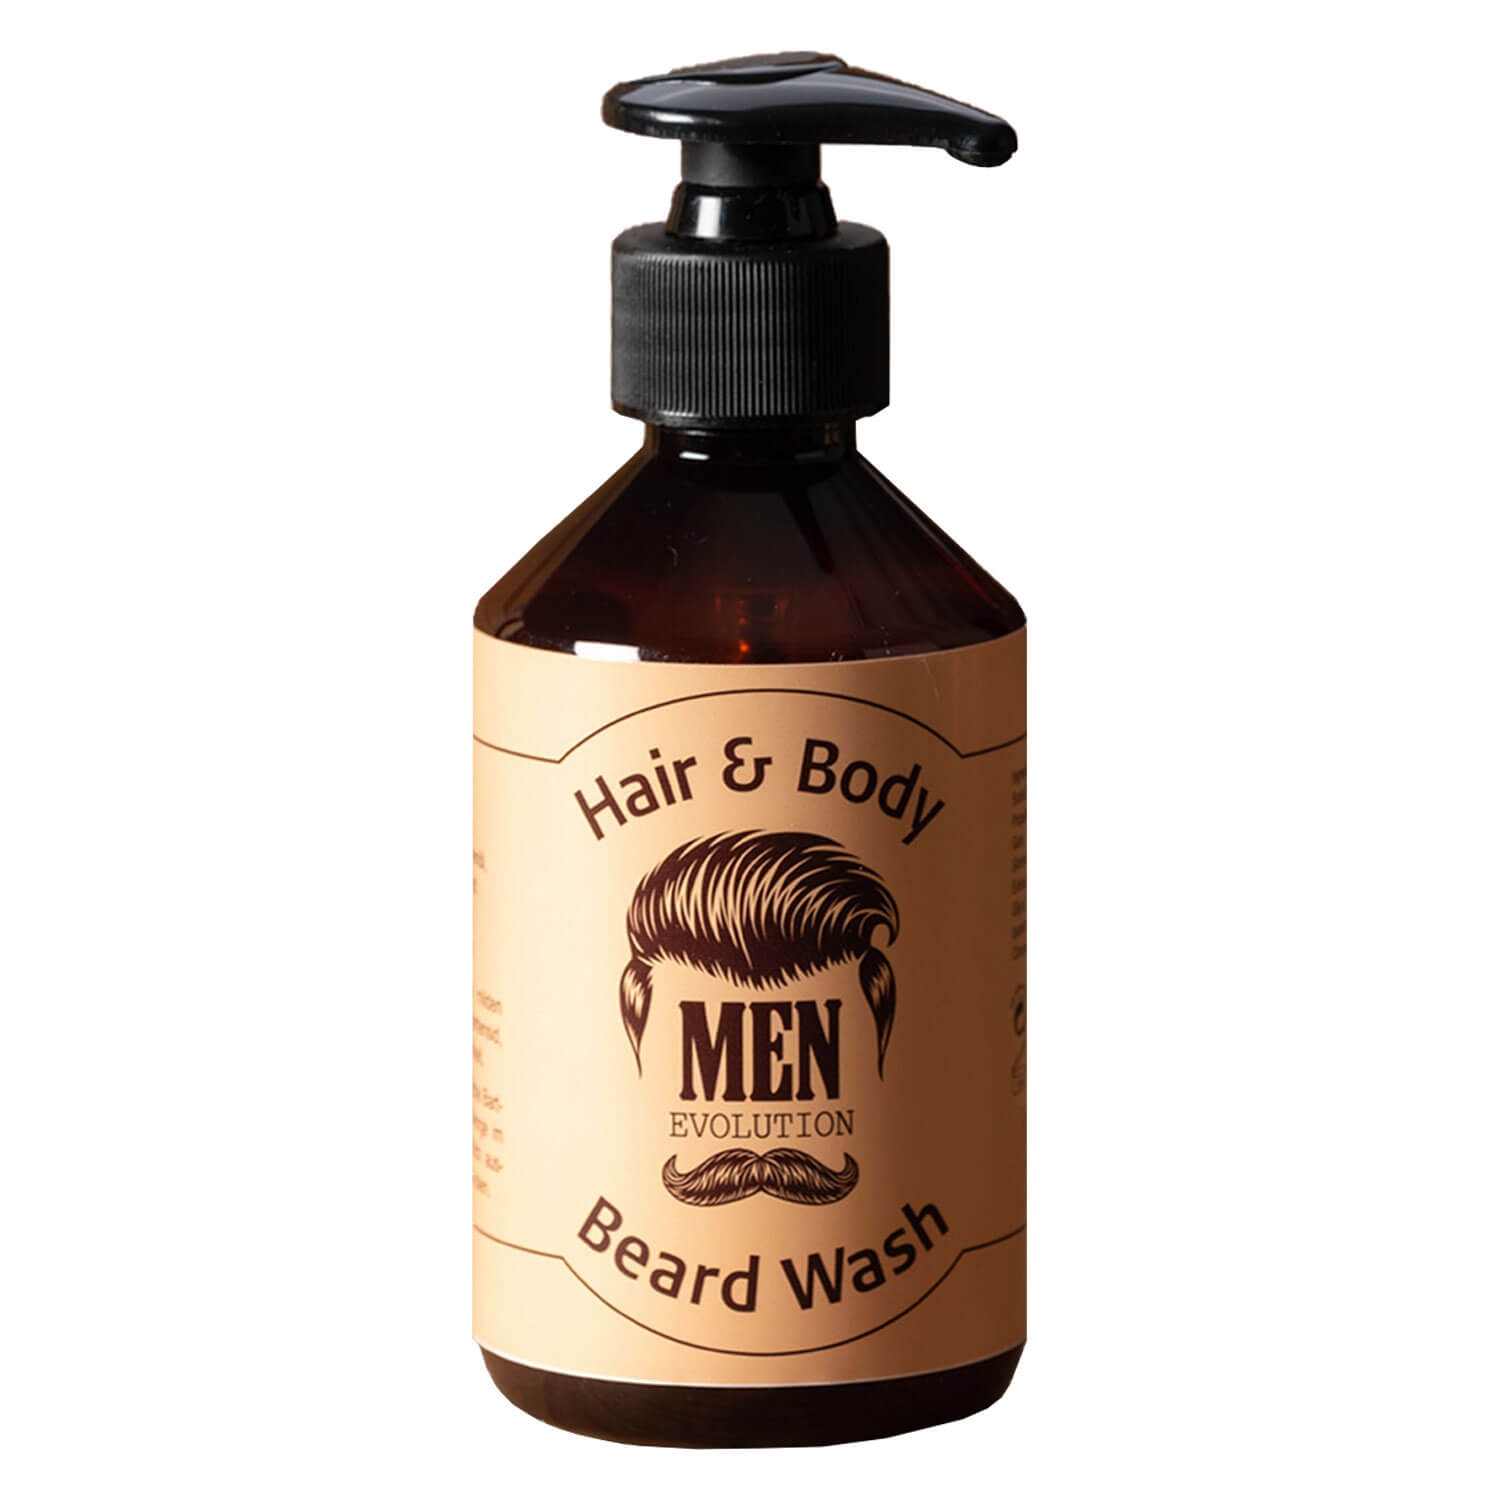 Produktbild von MEN Evolution - Hair & Body Beard Wash